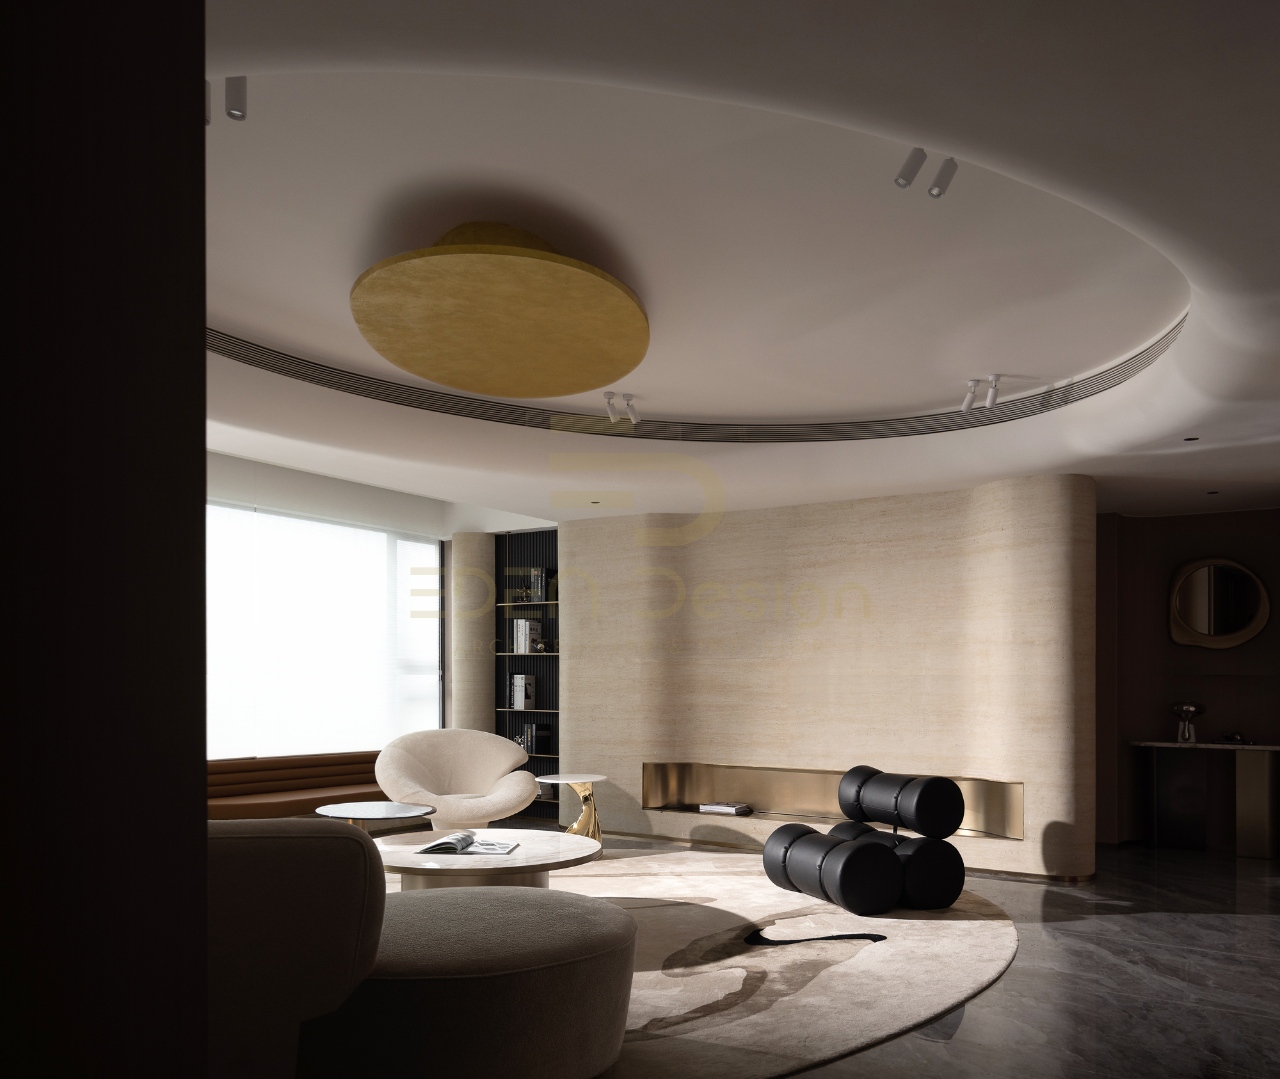 Lựa chọn những nội thất có thiết kế độc đáo giúp tổng thể phòng khách trở nên ấn tượng hơn